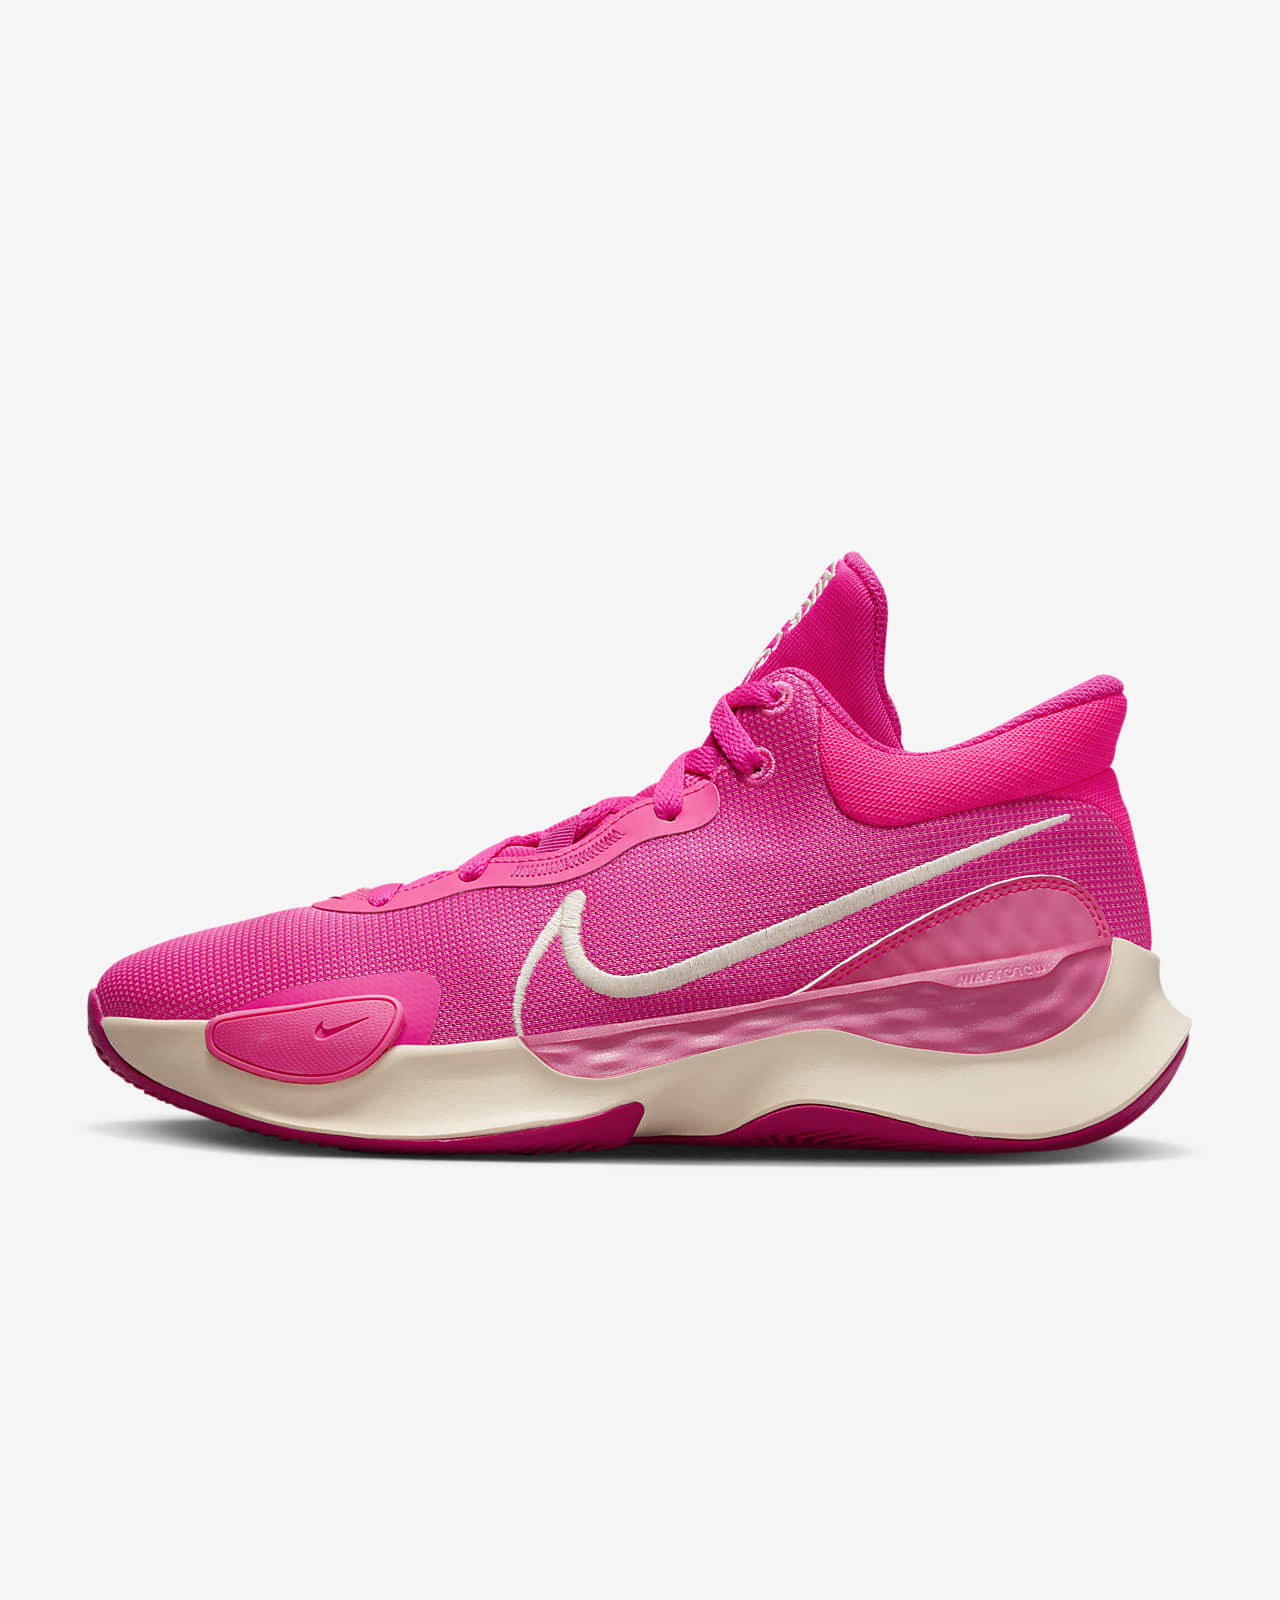 Nike Elevate 3 籃球鞋